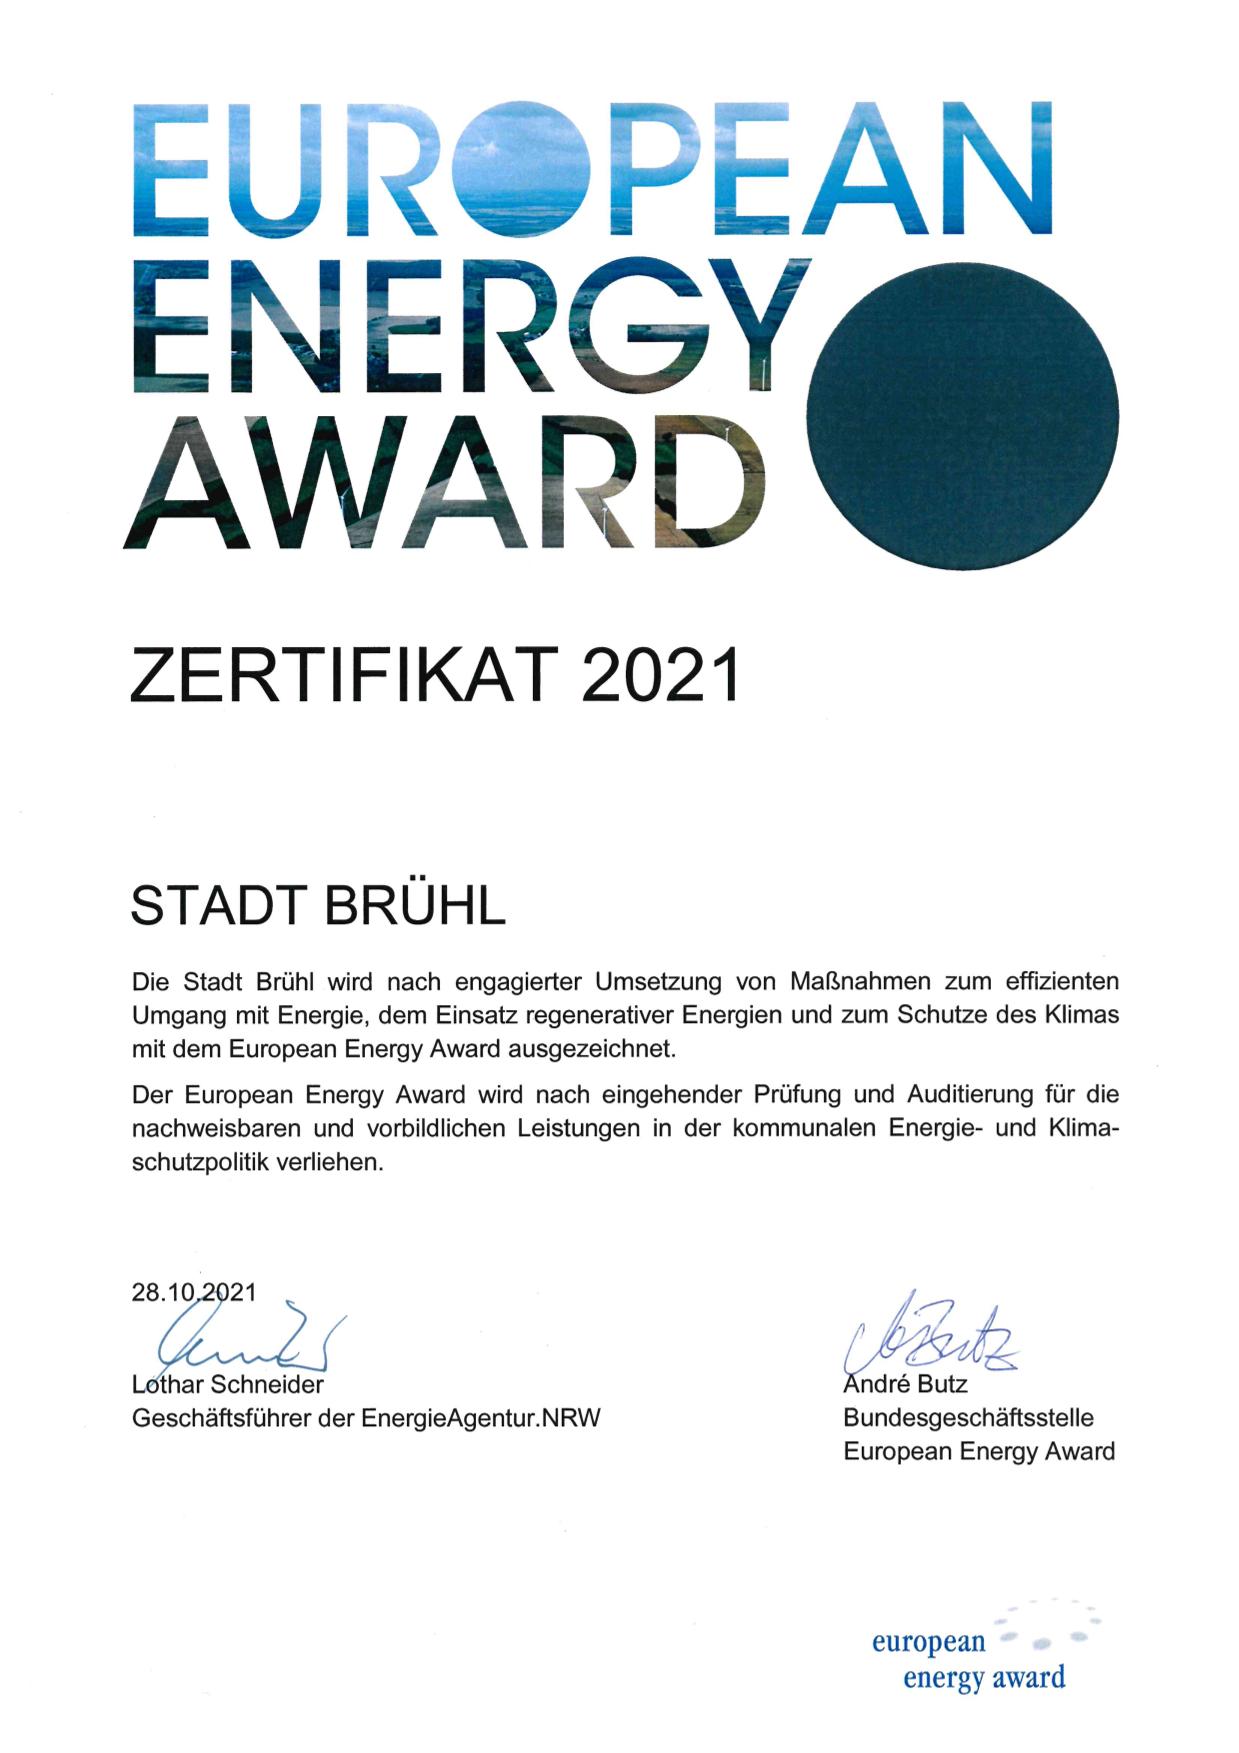 Zertifikat über Verleihung des eea 2021